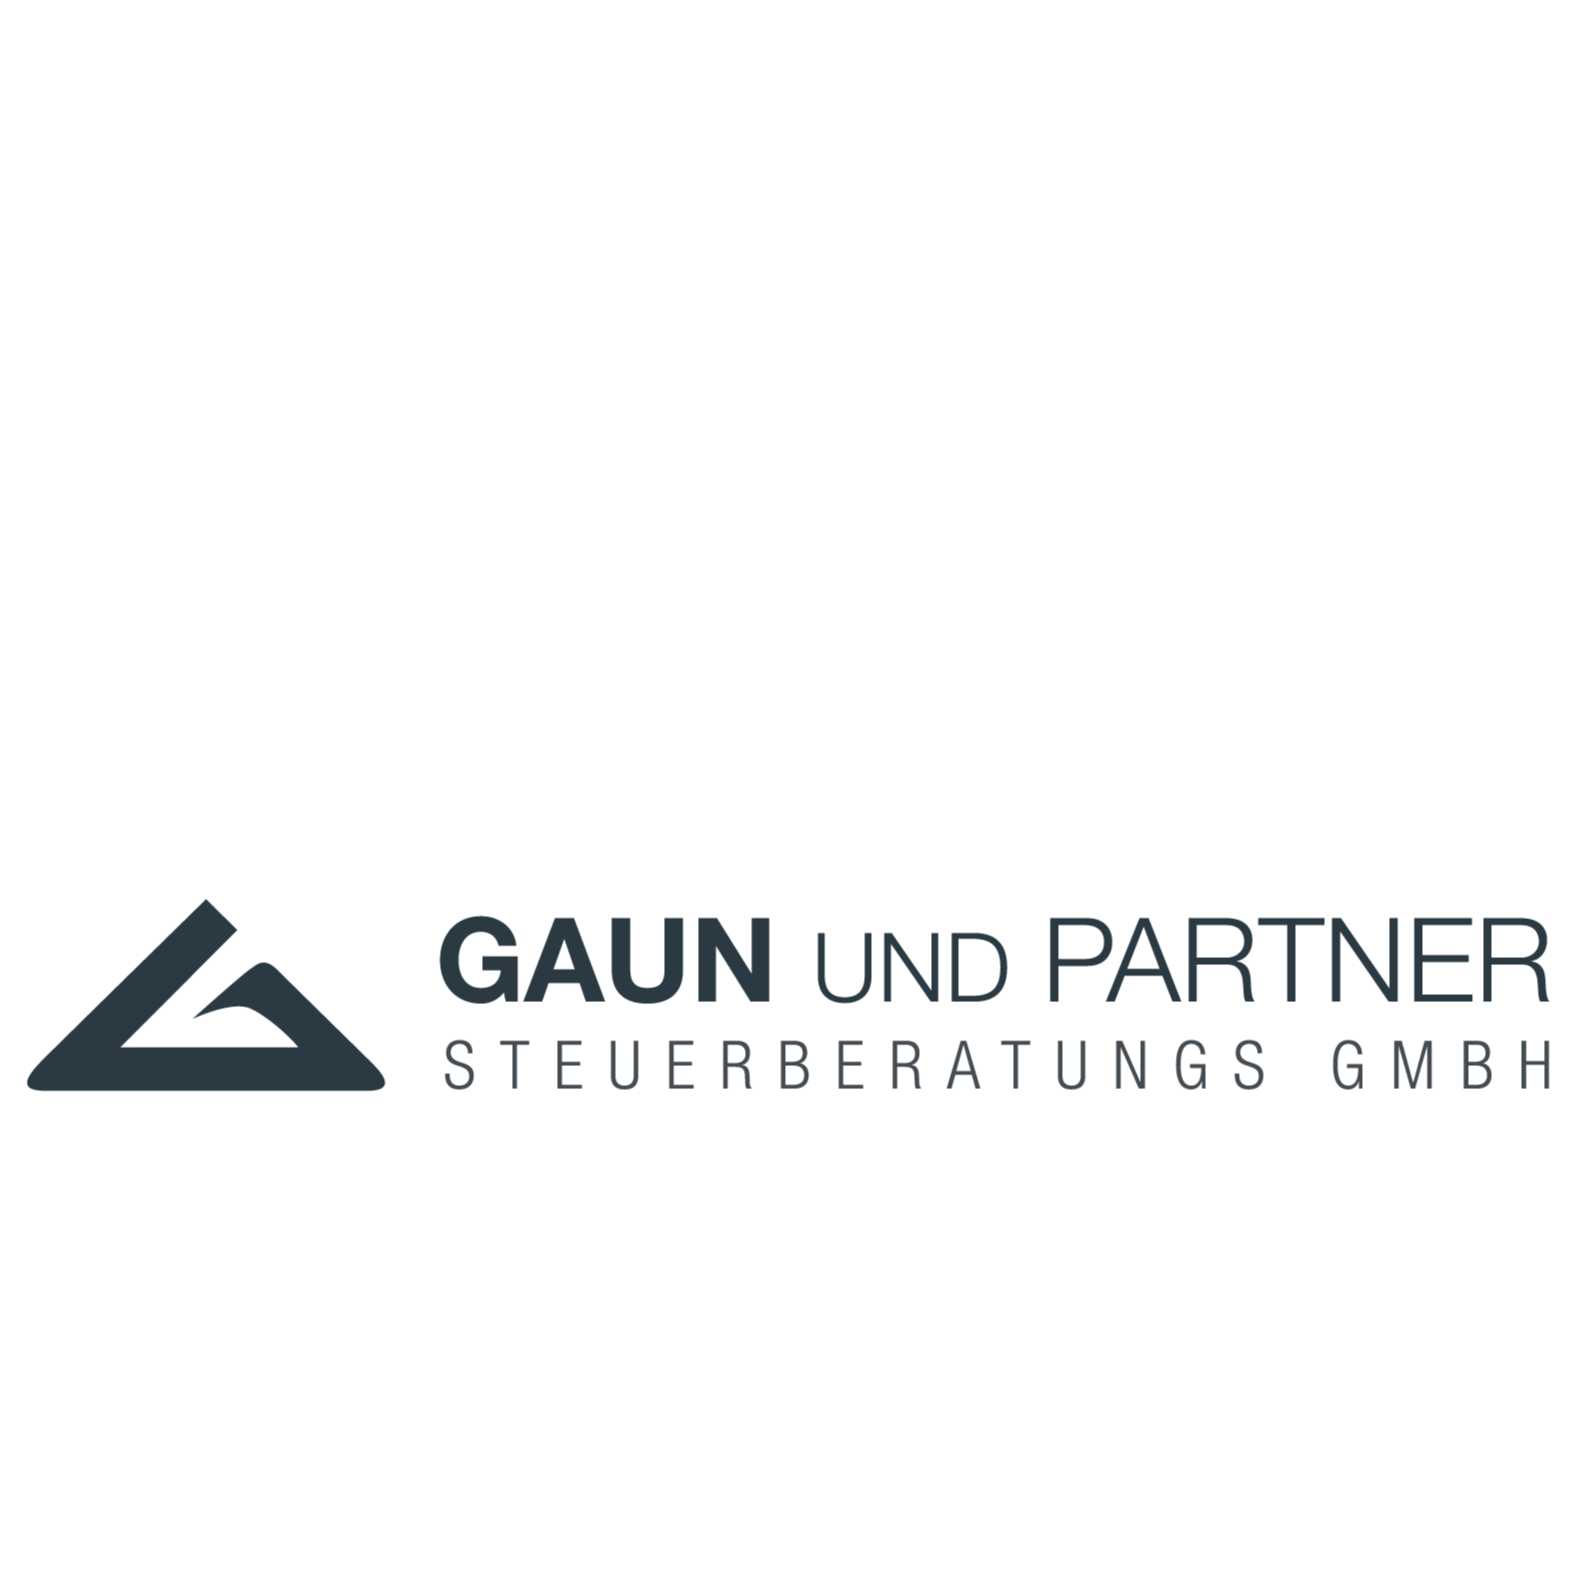 Gaun und Partner Steuerberatungs GmbH 6330 Kufstein